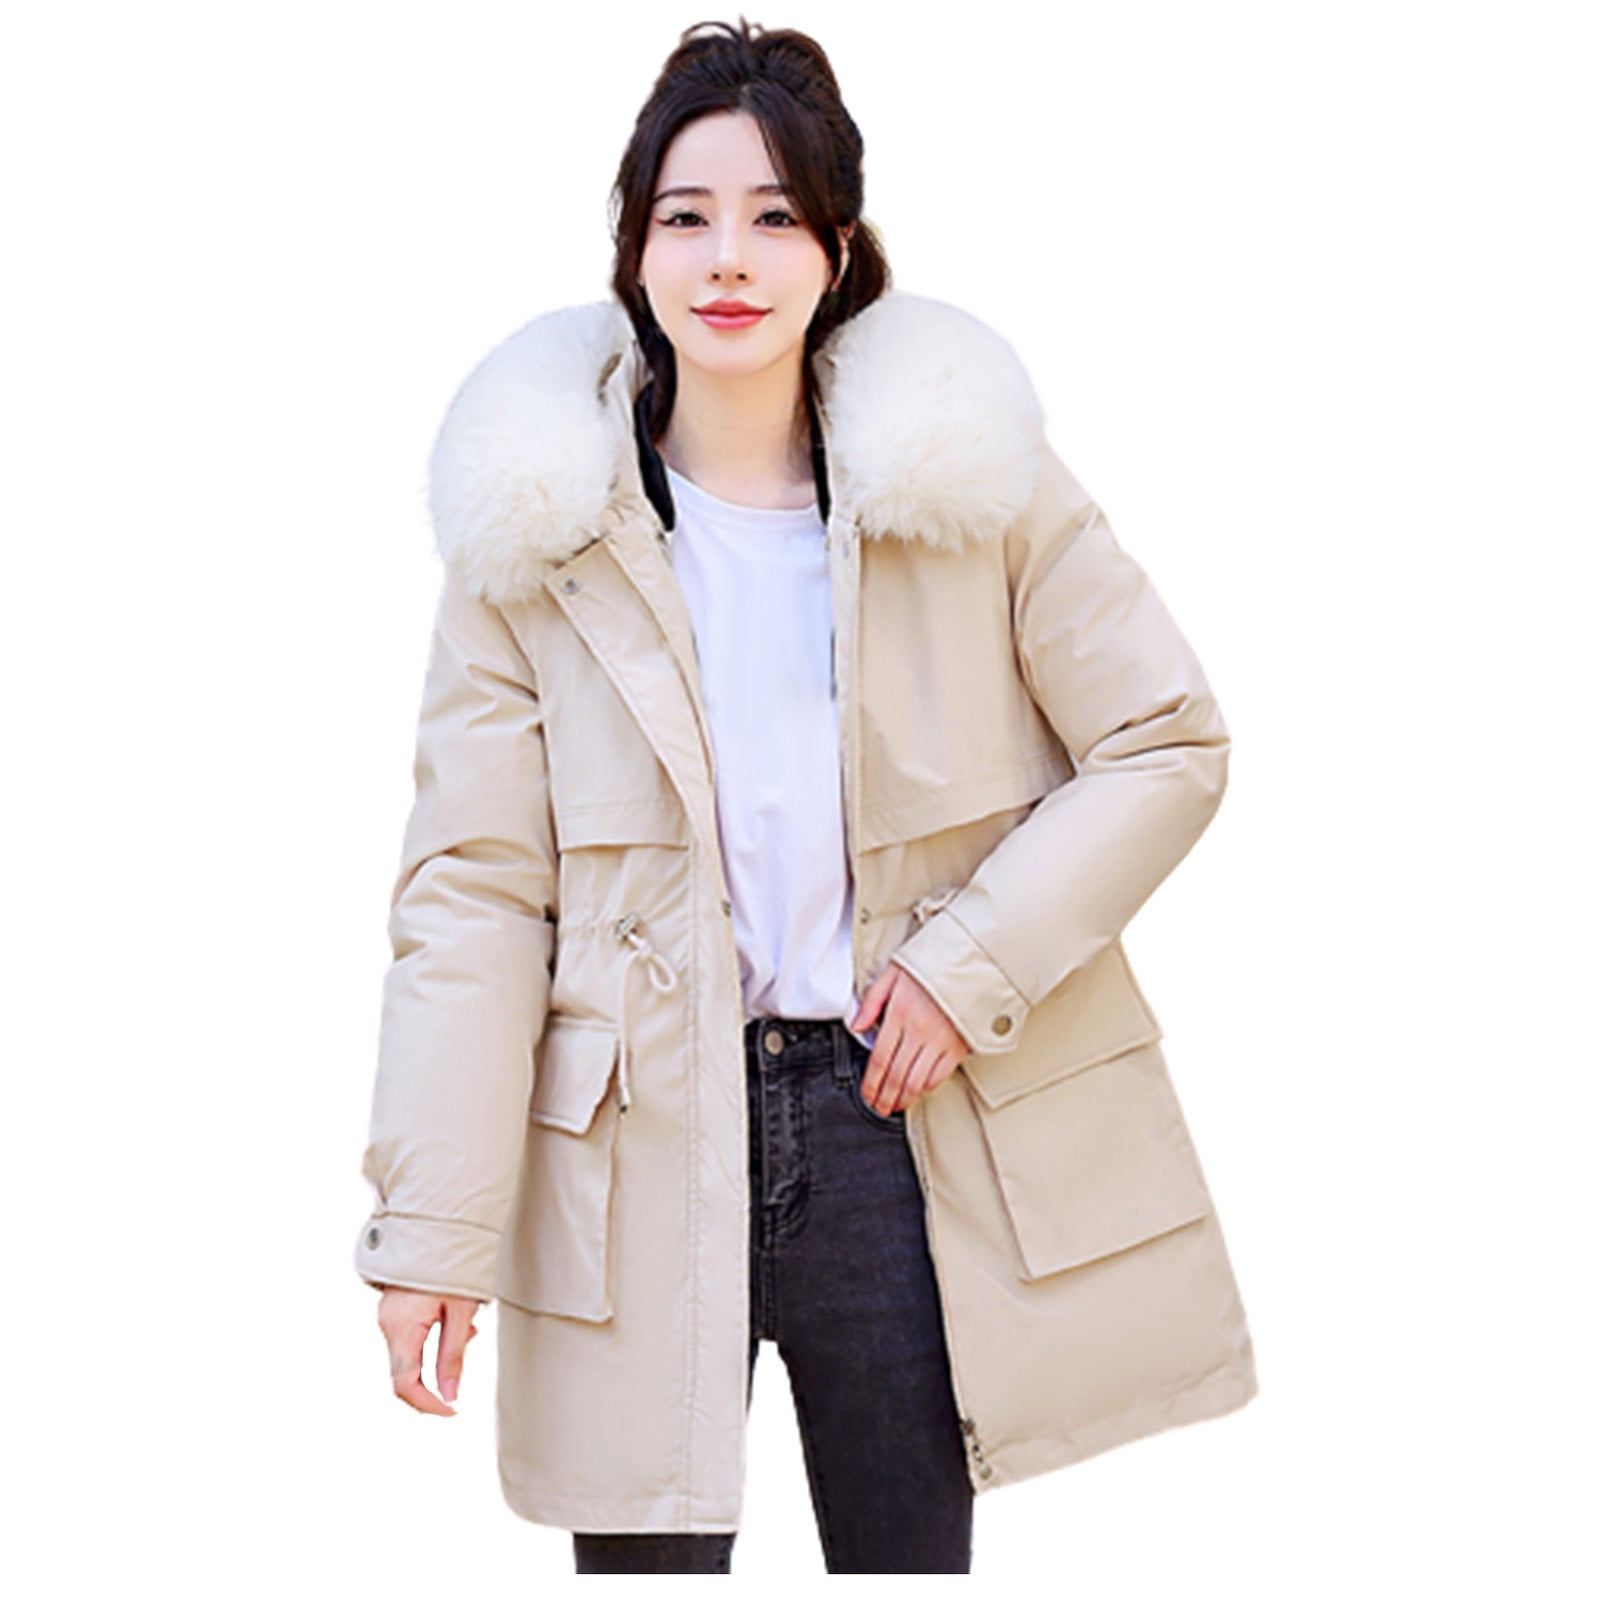 Fesfesfes Women Winter Lapel Jacket Warm Overcoat Fur-Collar Zipper Thicker  Coat Outerwear Sale Clearance 